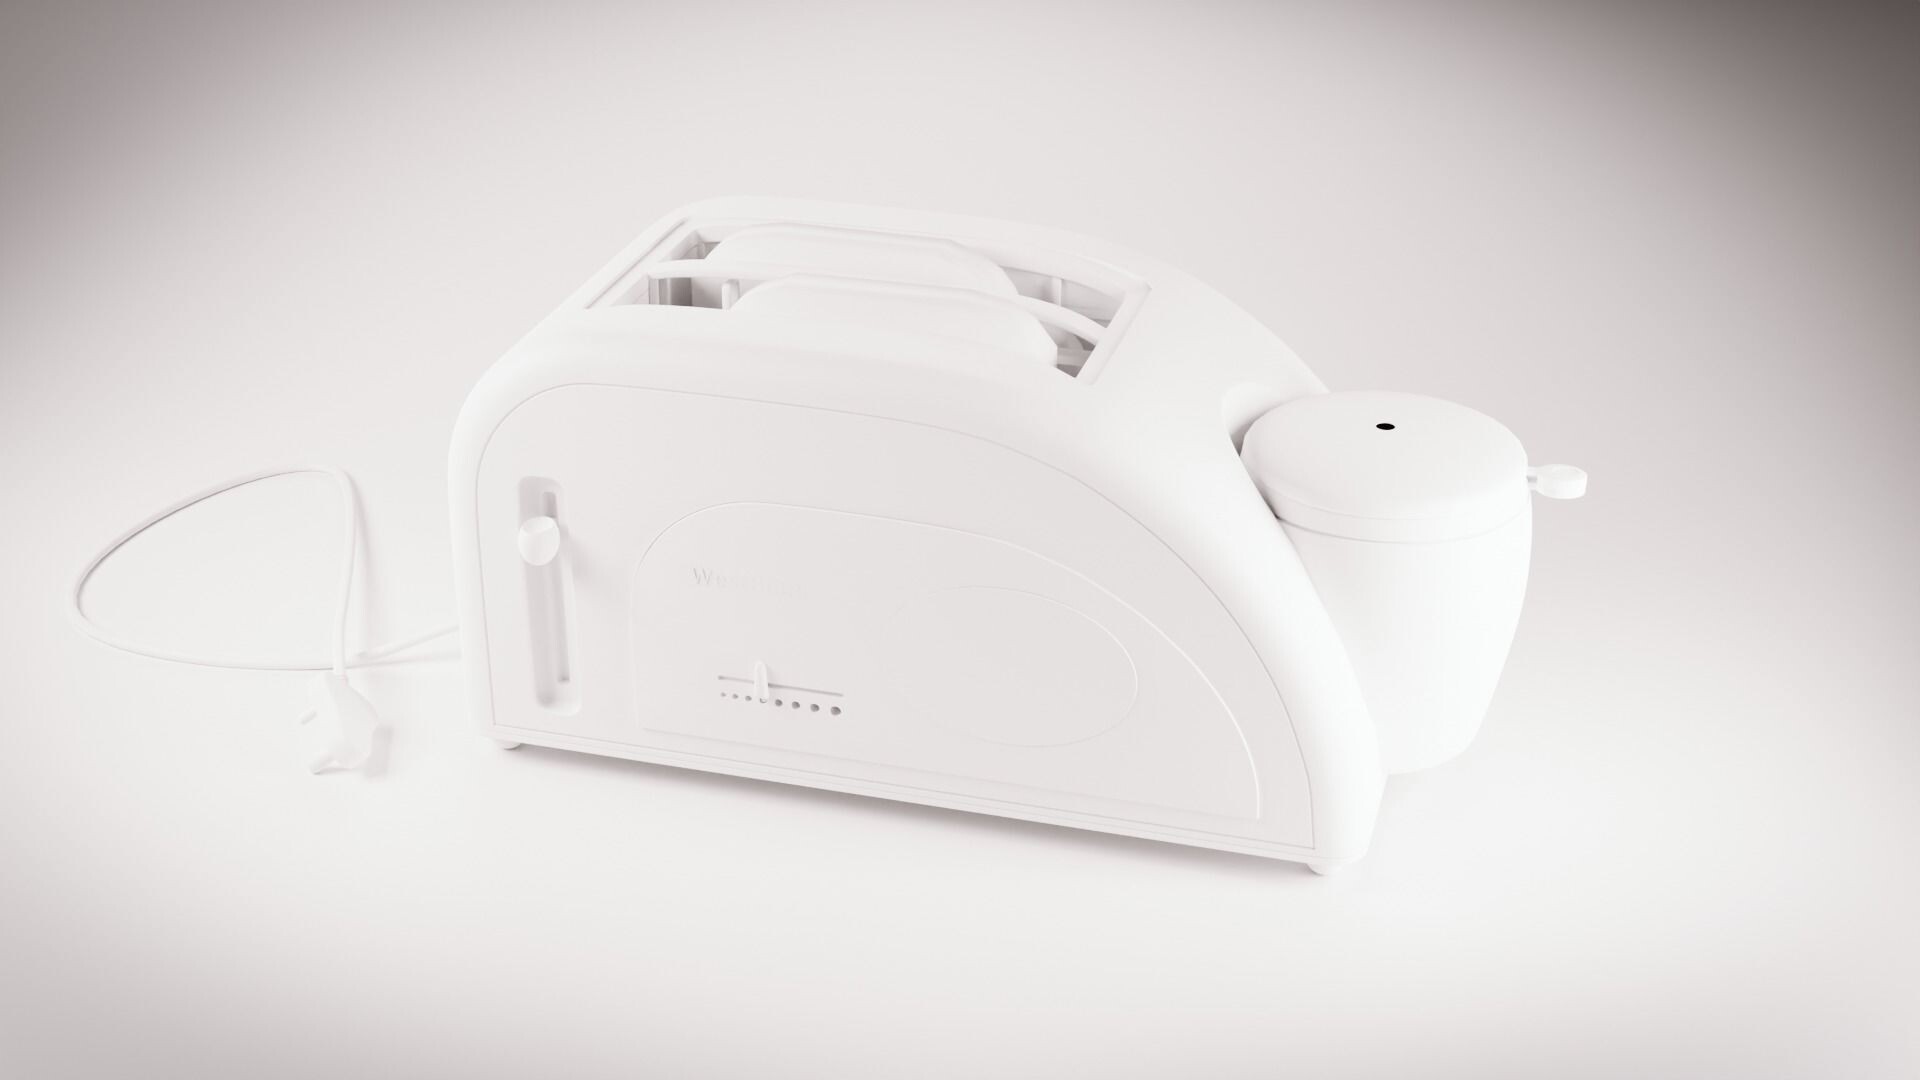 https://cdnb.artstation.com/p/assets/images/images/054/985/647/large/vishal-saini-west-bend-toaster-with-egg-cooker-3d-model-05.jpg?1665841137